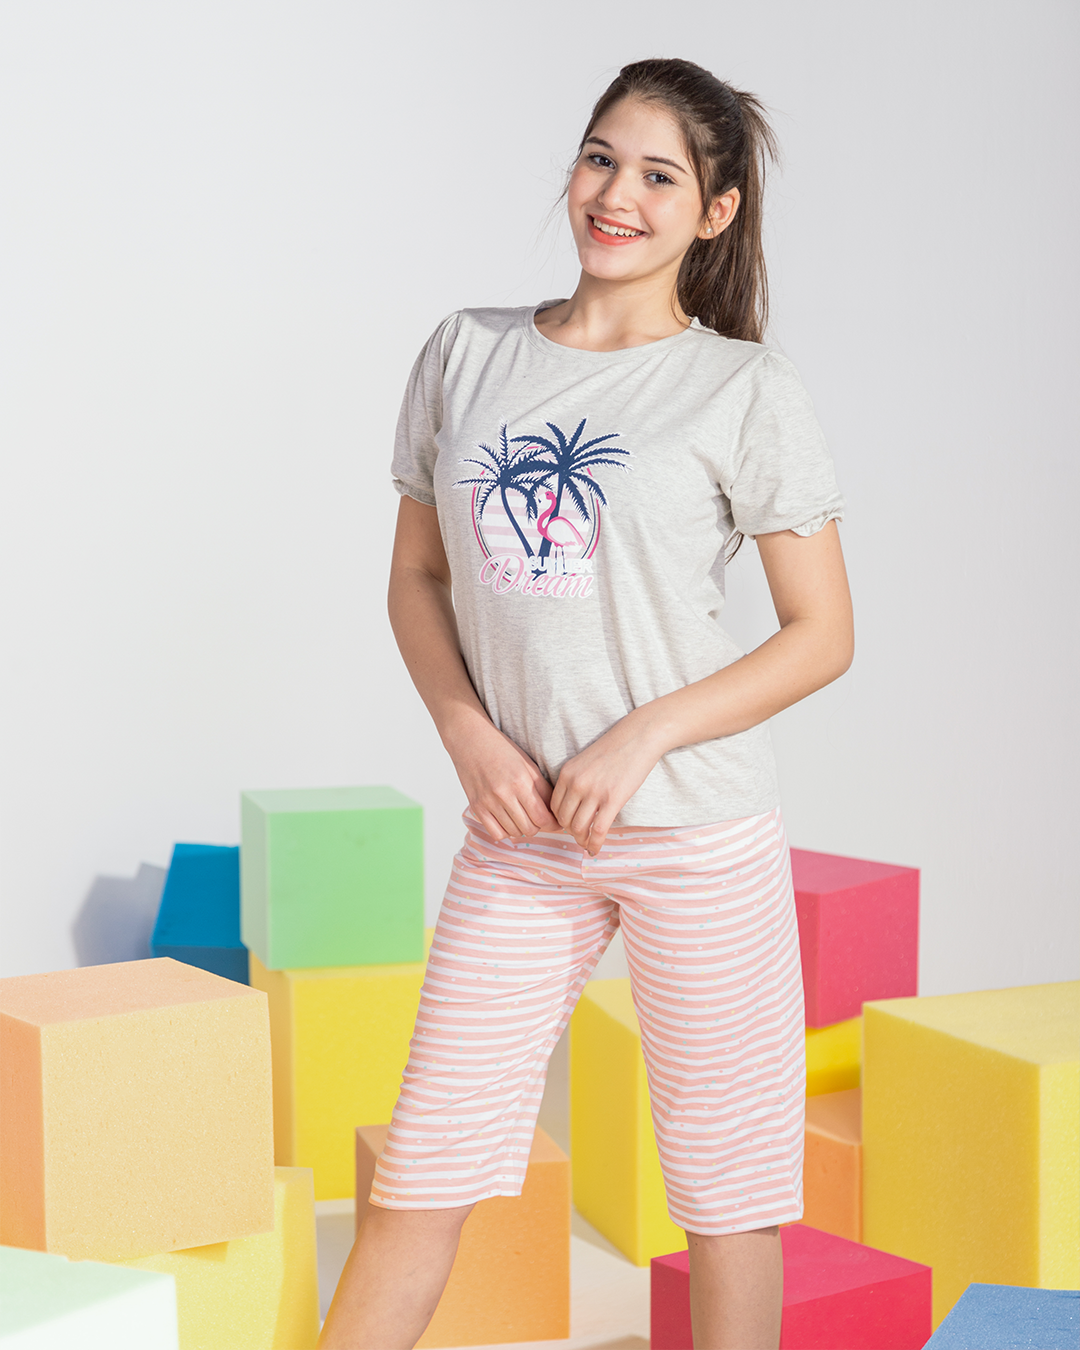 Girls' pajamas, Pintacore Brasula, printed